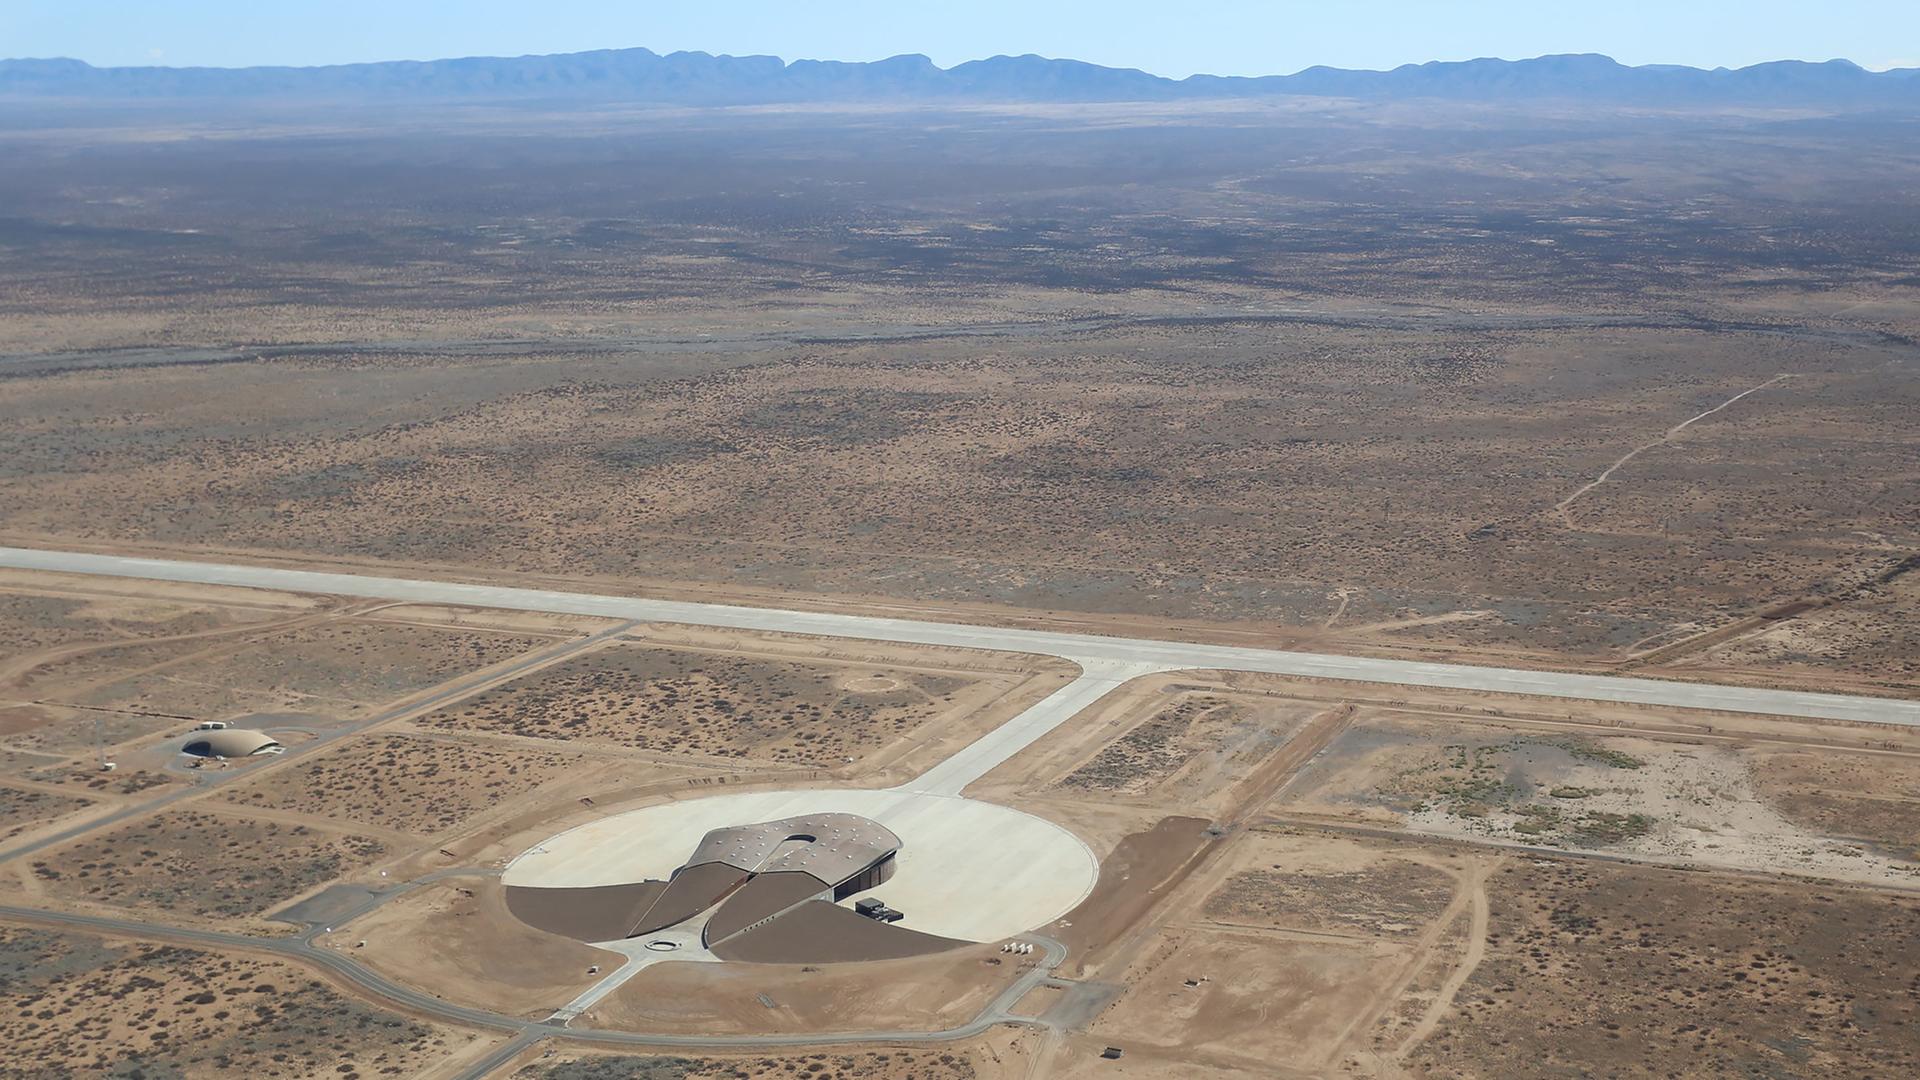 Der Weltraumbahnof Spaceport America in der Wüste New Mexicos